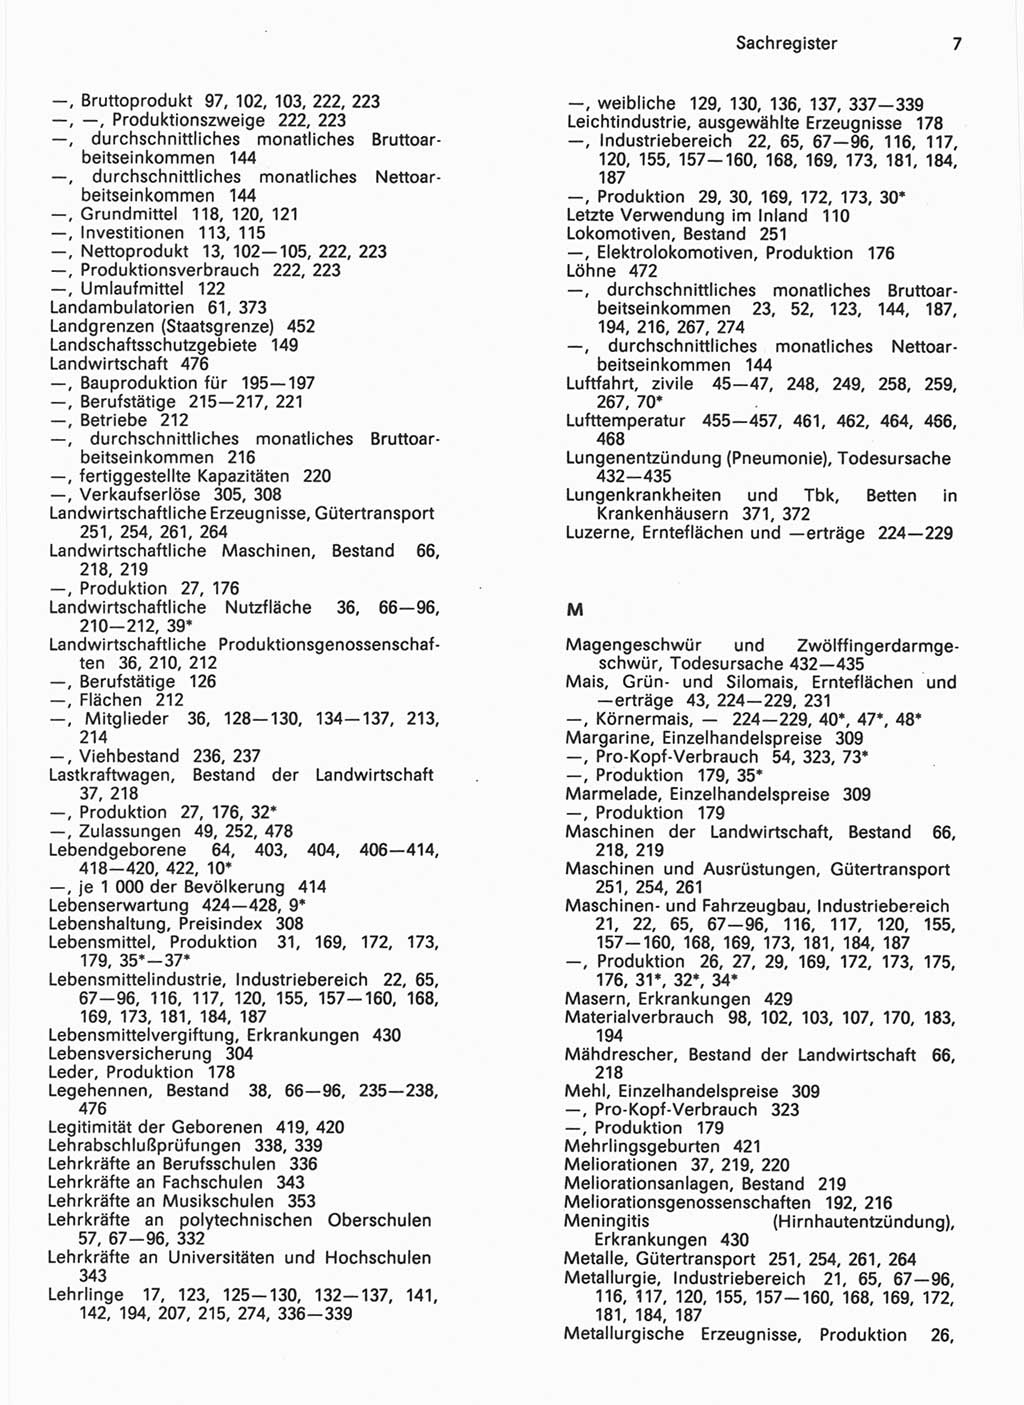 Statistisches Jahrbuch der Deutschen Demokratischen Republik (DDR) 1990, Seite 7 (Stat. Jb. DDR 1990, S. 7)